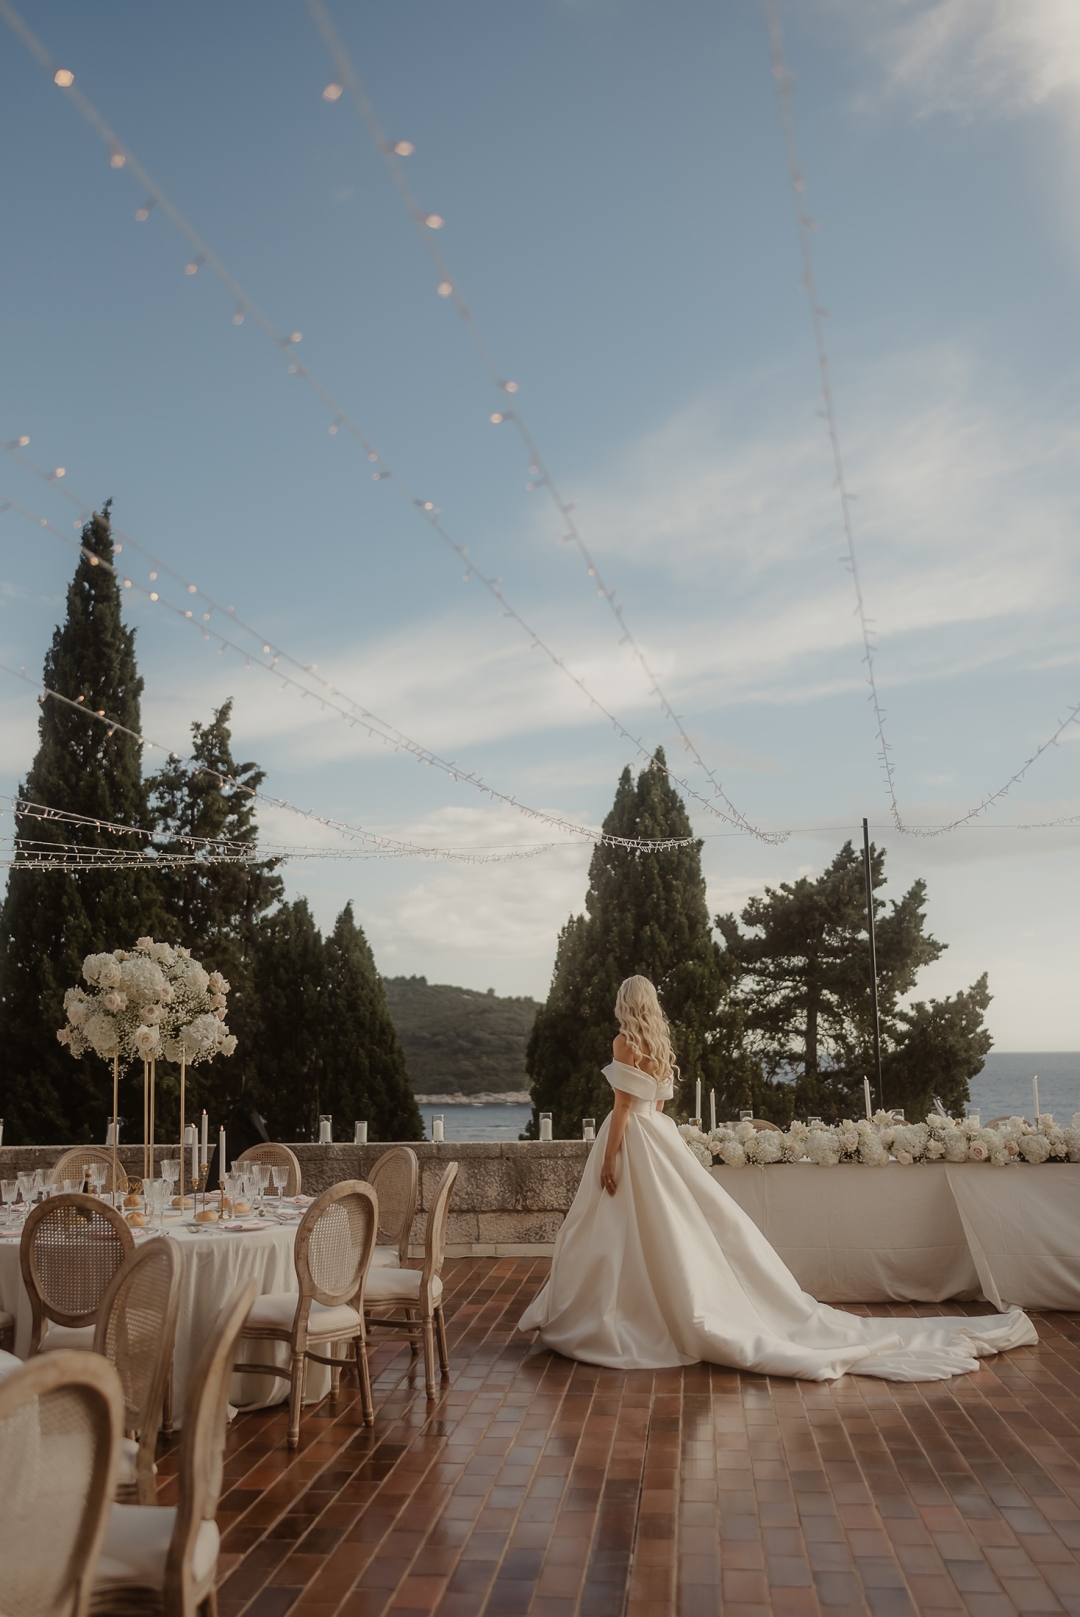 Ines stoji iza najraskošnijih dubrovačkih događanja i vjenčanja. Razgovarali smo s njom o luksuznoj event industriji